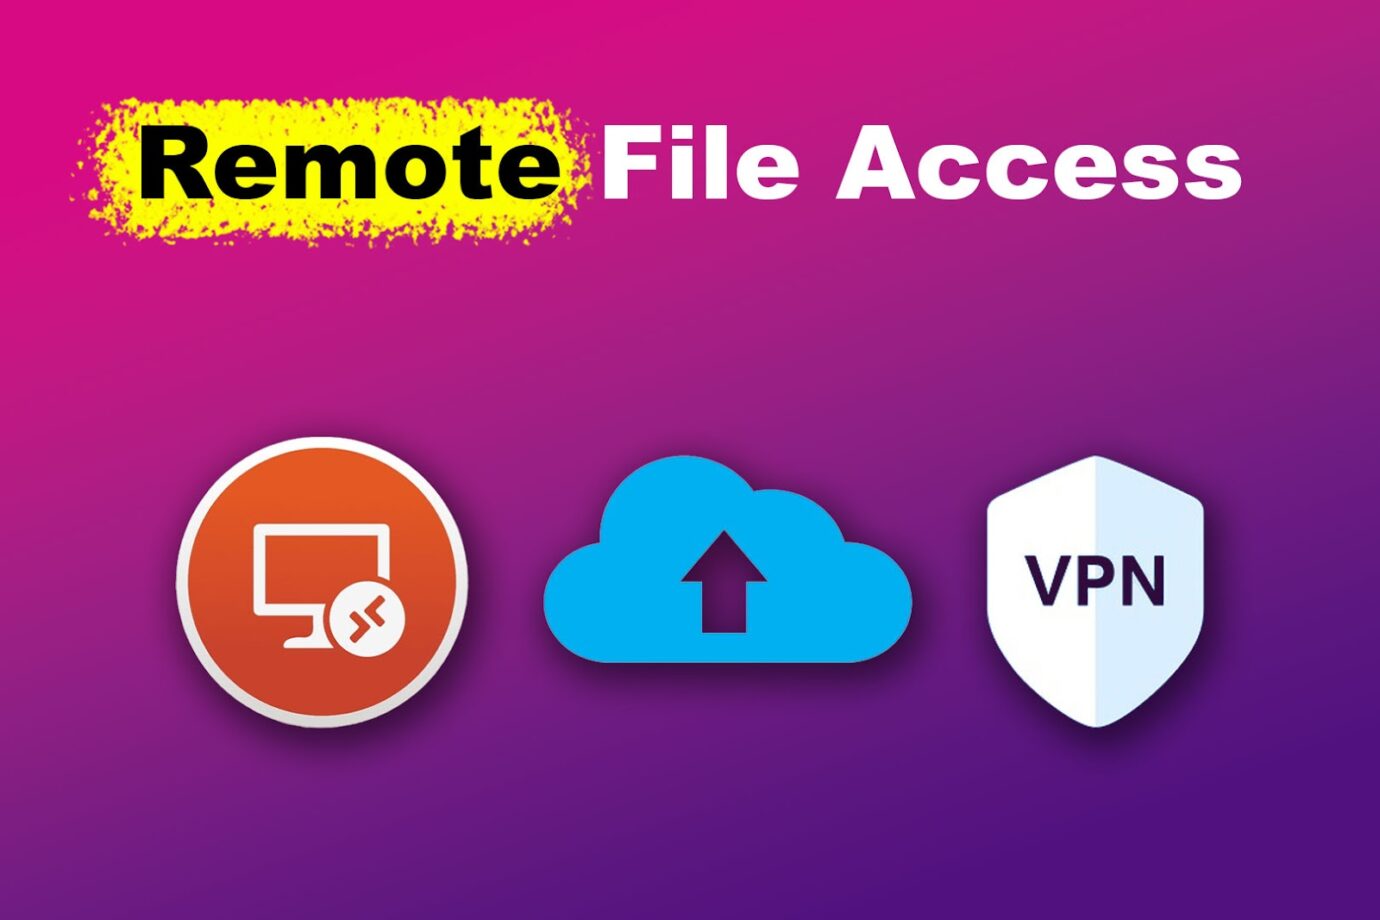 Remote File Access